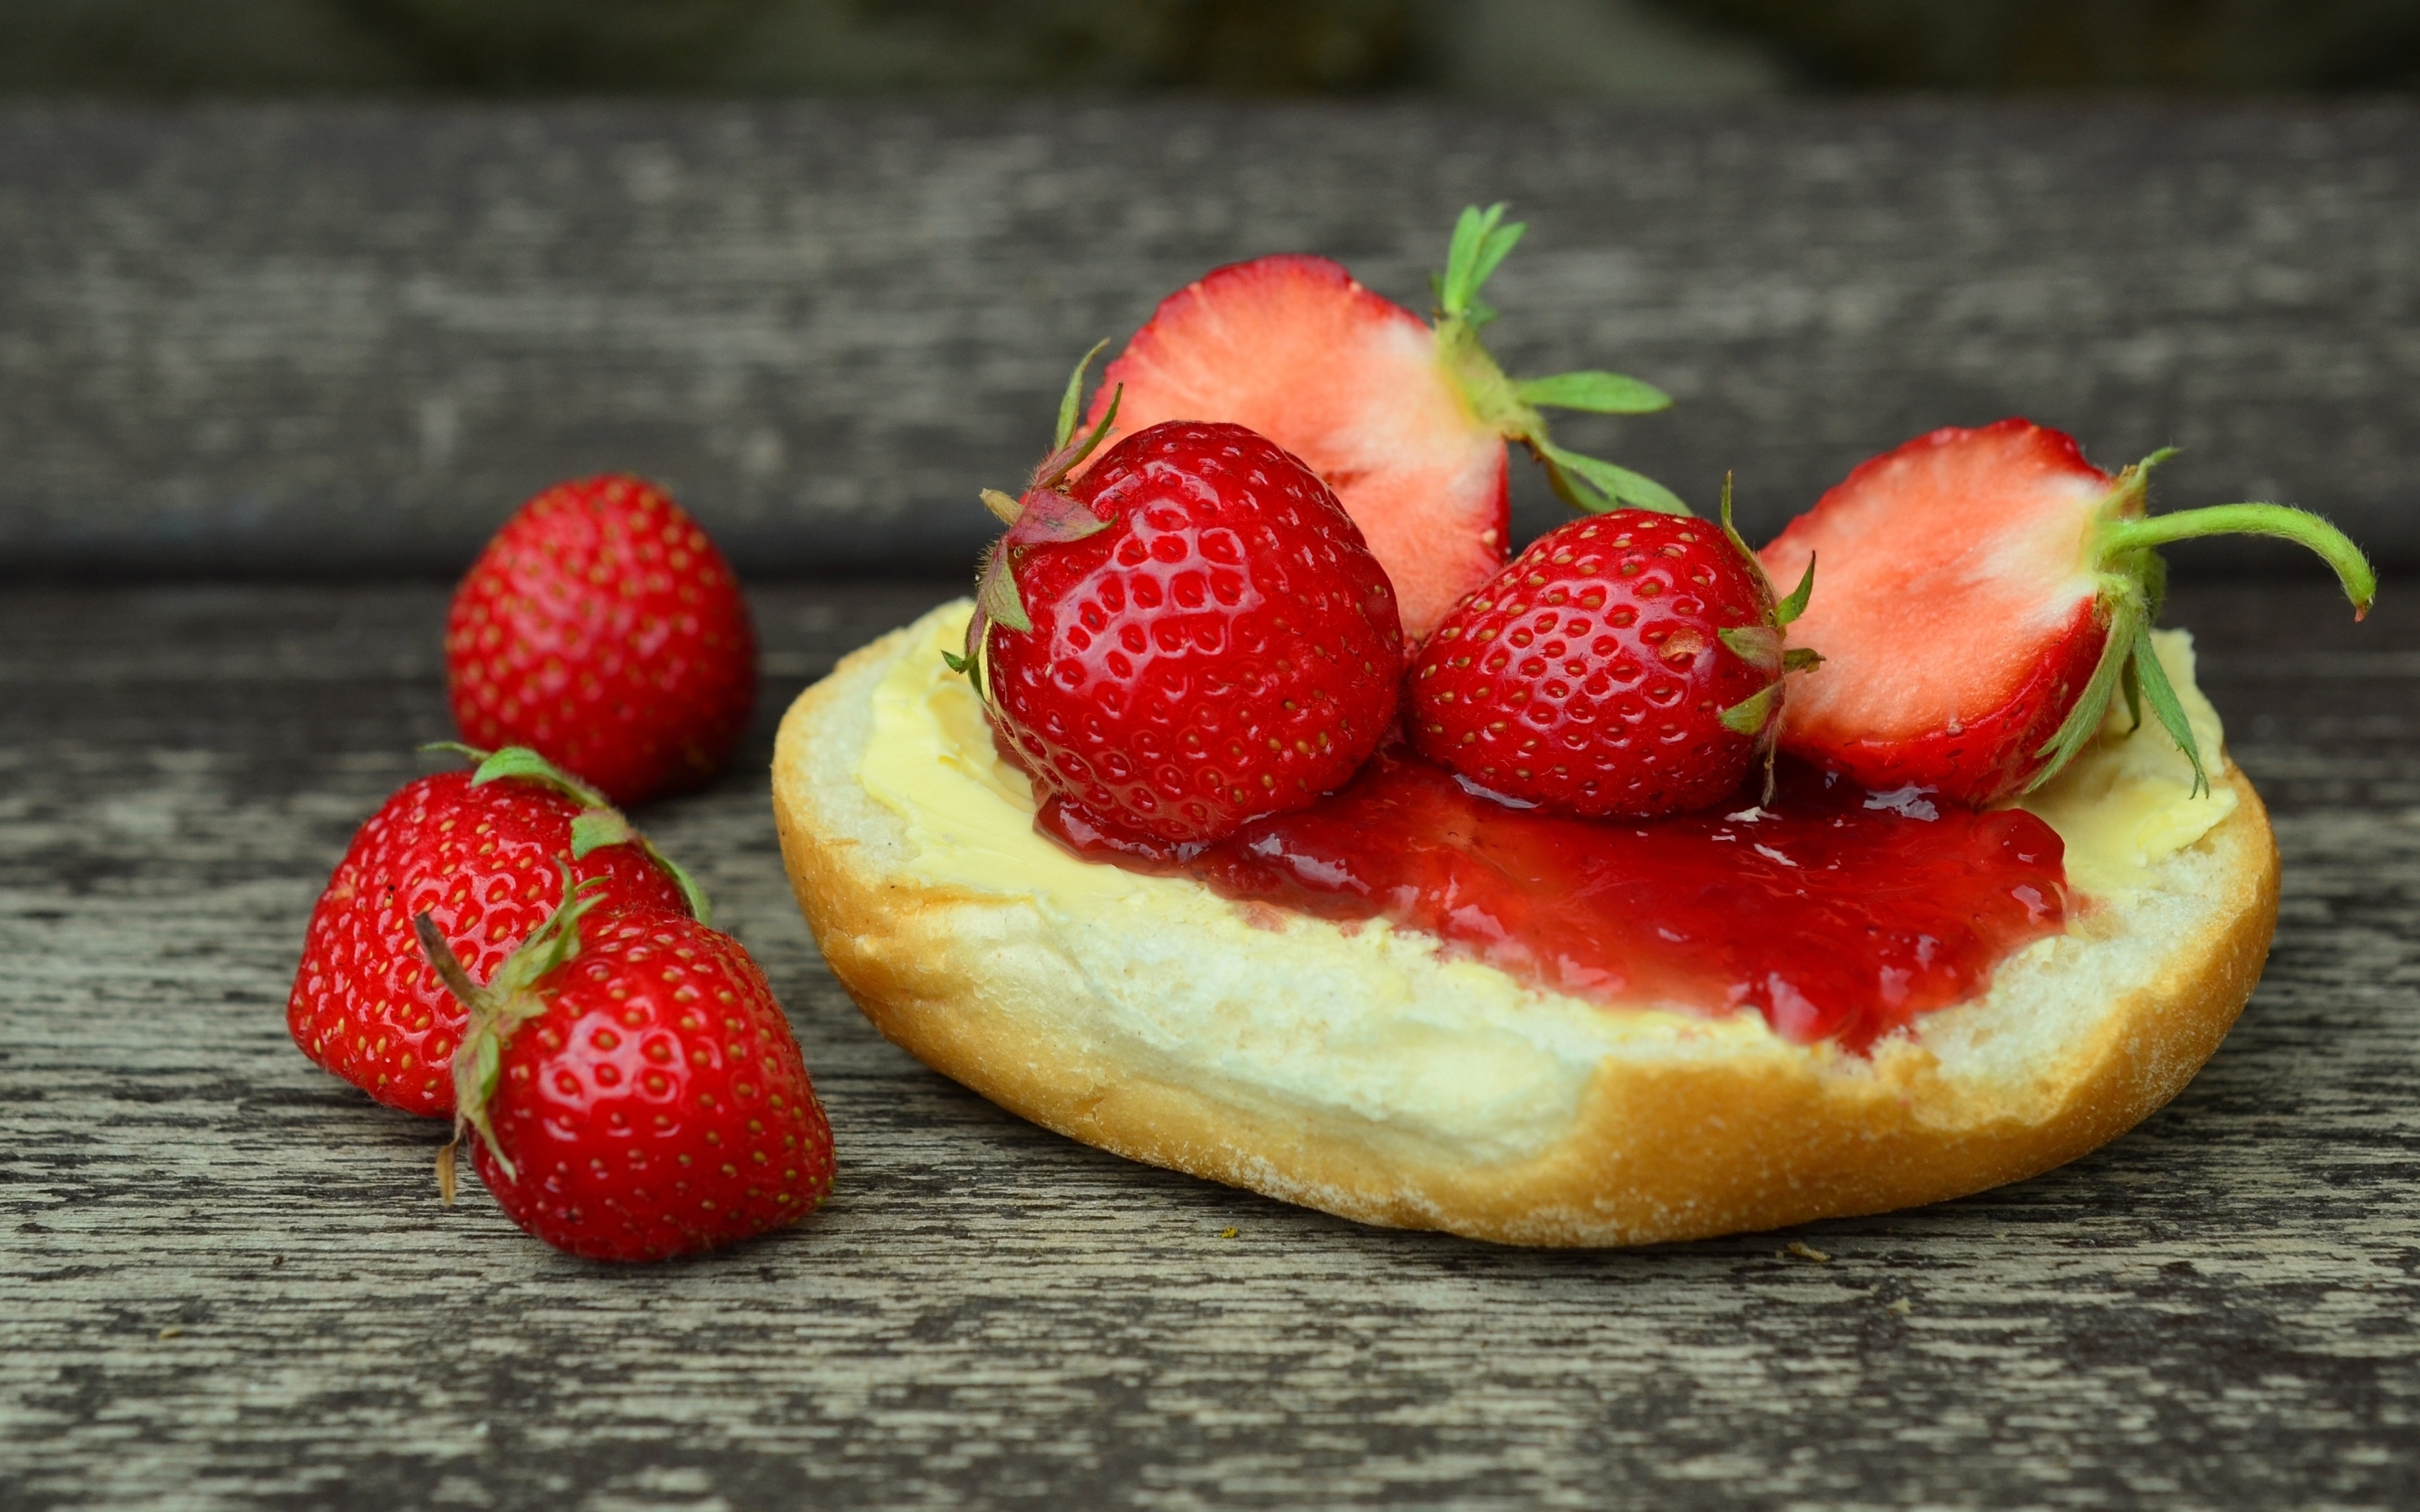 Image: Berries, strawberry, muffin